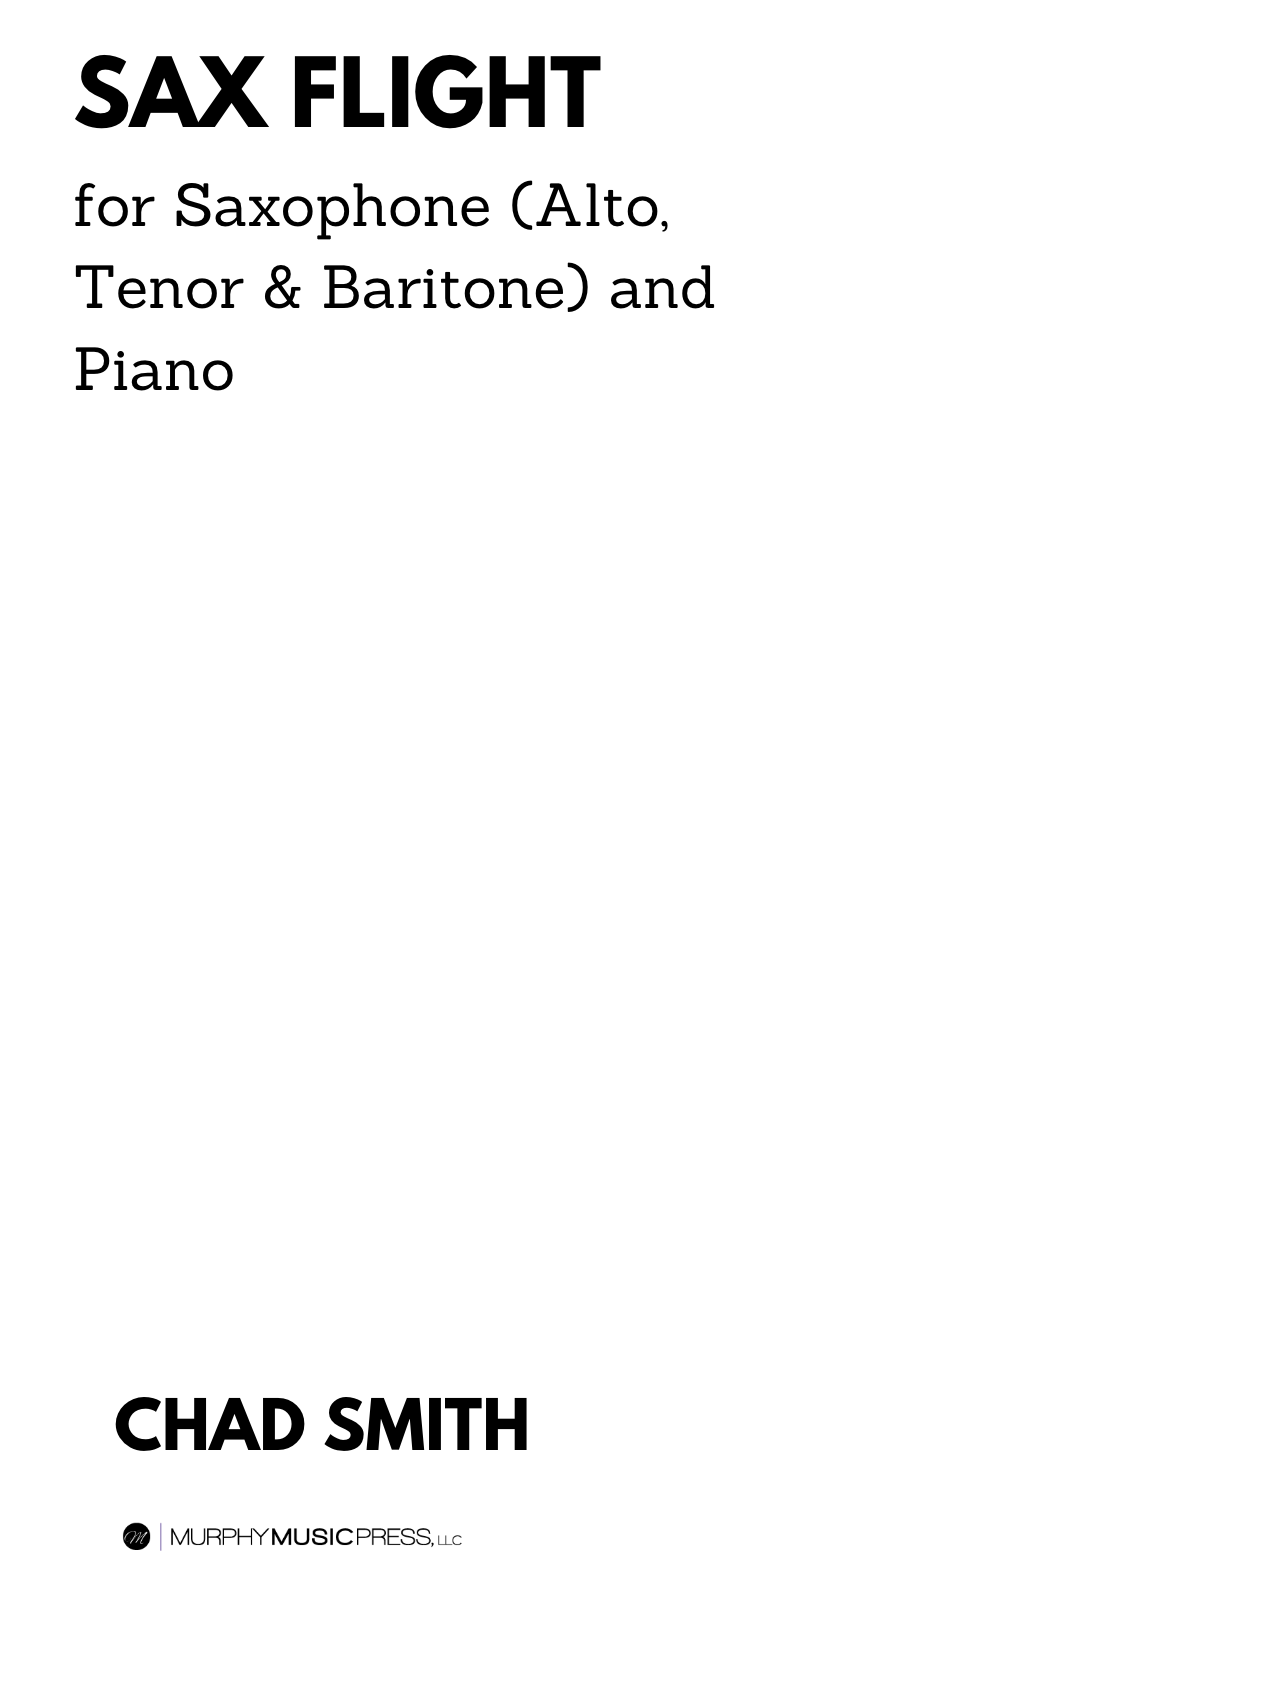 PARTITION CLASSIQUE - Triolets Pop - A. LOPEZ - Saxophone Alto et Piano:  3700793705379: Books 